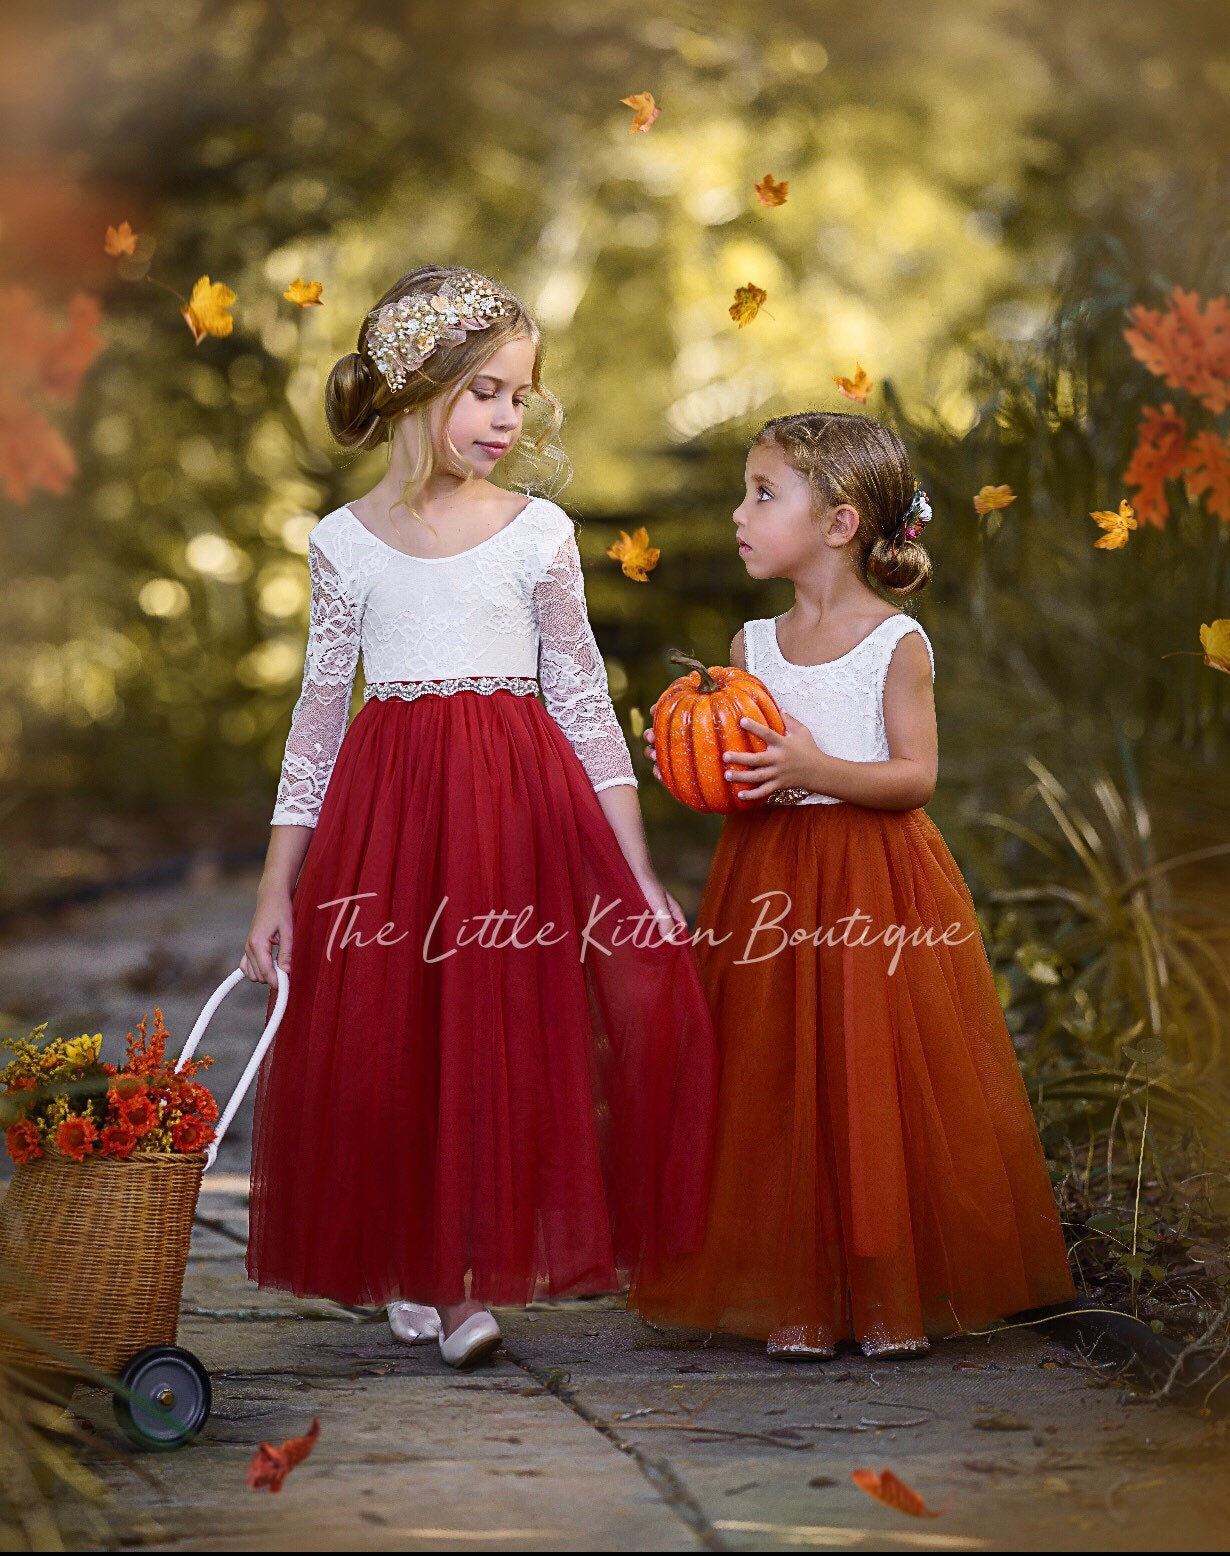 Burnt Orange Flower Girl Dress, Rust Flower Girl Dress, Rustic Lace Flower  Girl Dress, Boho Flower Girl Dress, Toddler Dress, Girls Dress 